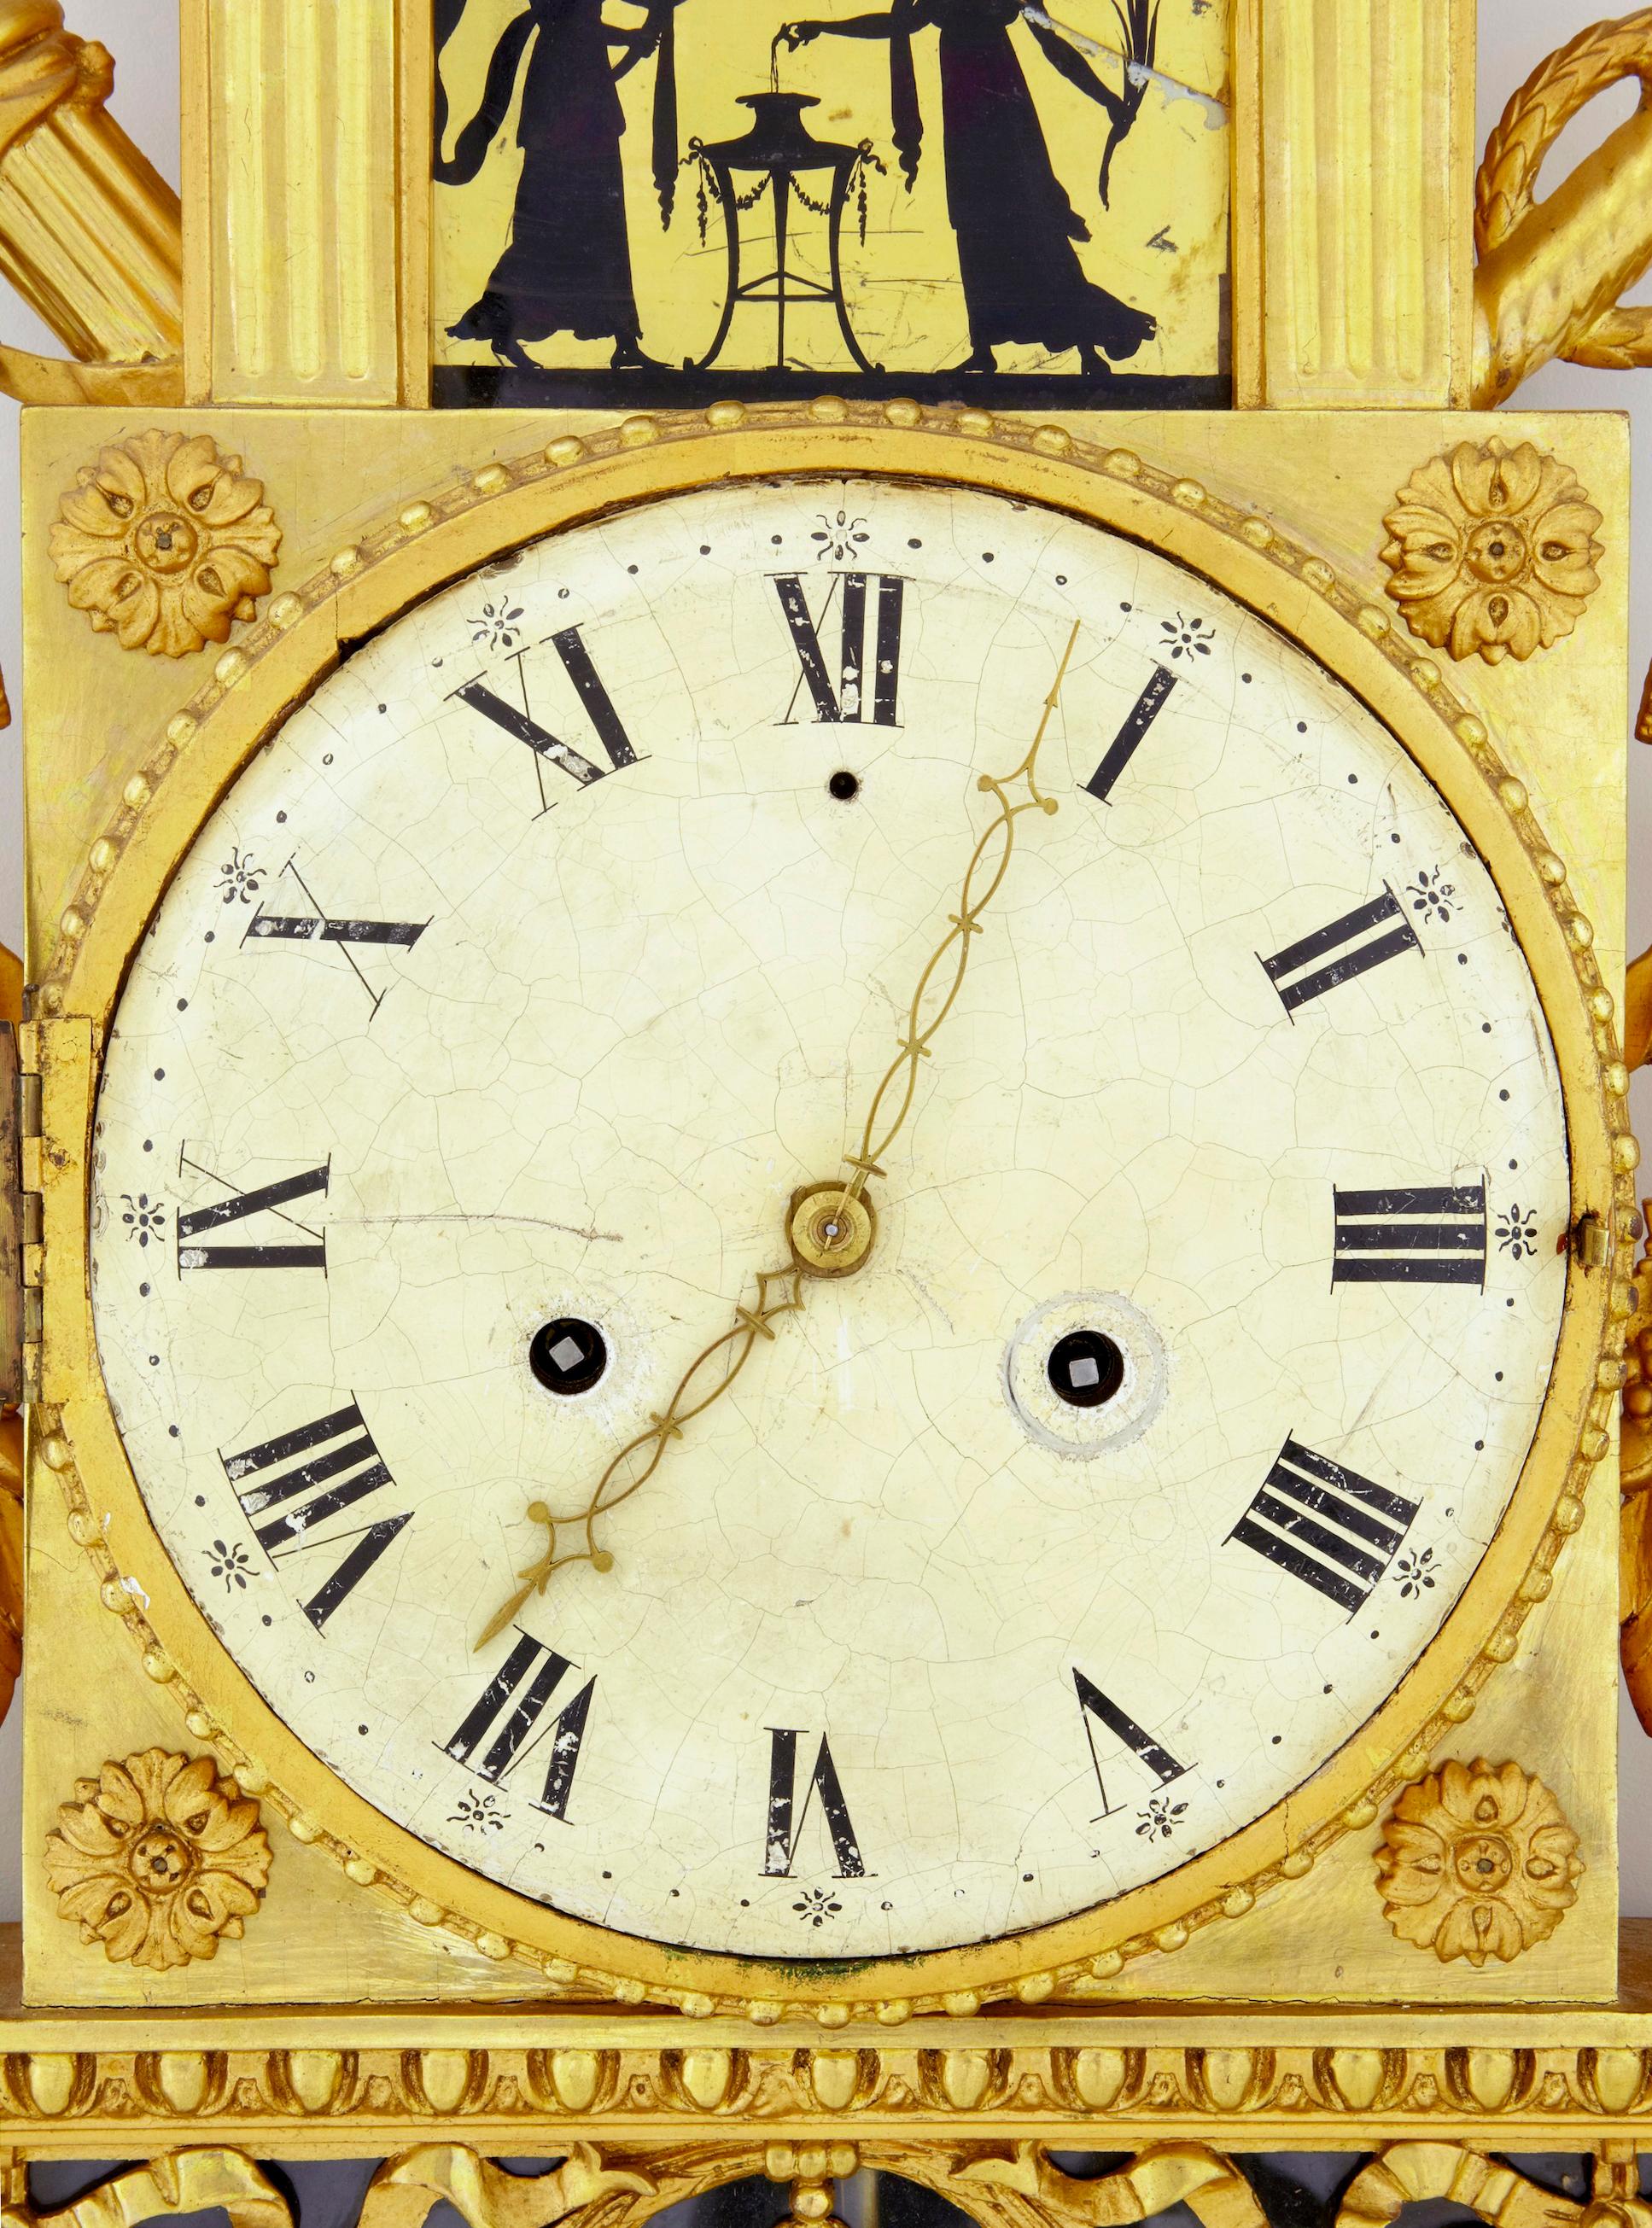 Horloge murale suédoise du XIXe siècle, dorée et églomisée, vers 1840.

Pendule murale suédoise de belle qualité de la période empire vers 1840. Magnifiquement sculpté, surmonté de colombes. 2 panneaux de verre églomisé (dont 1 cassé). Craquelure au